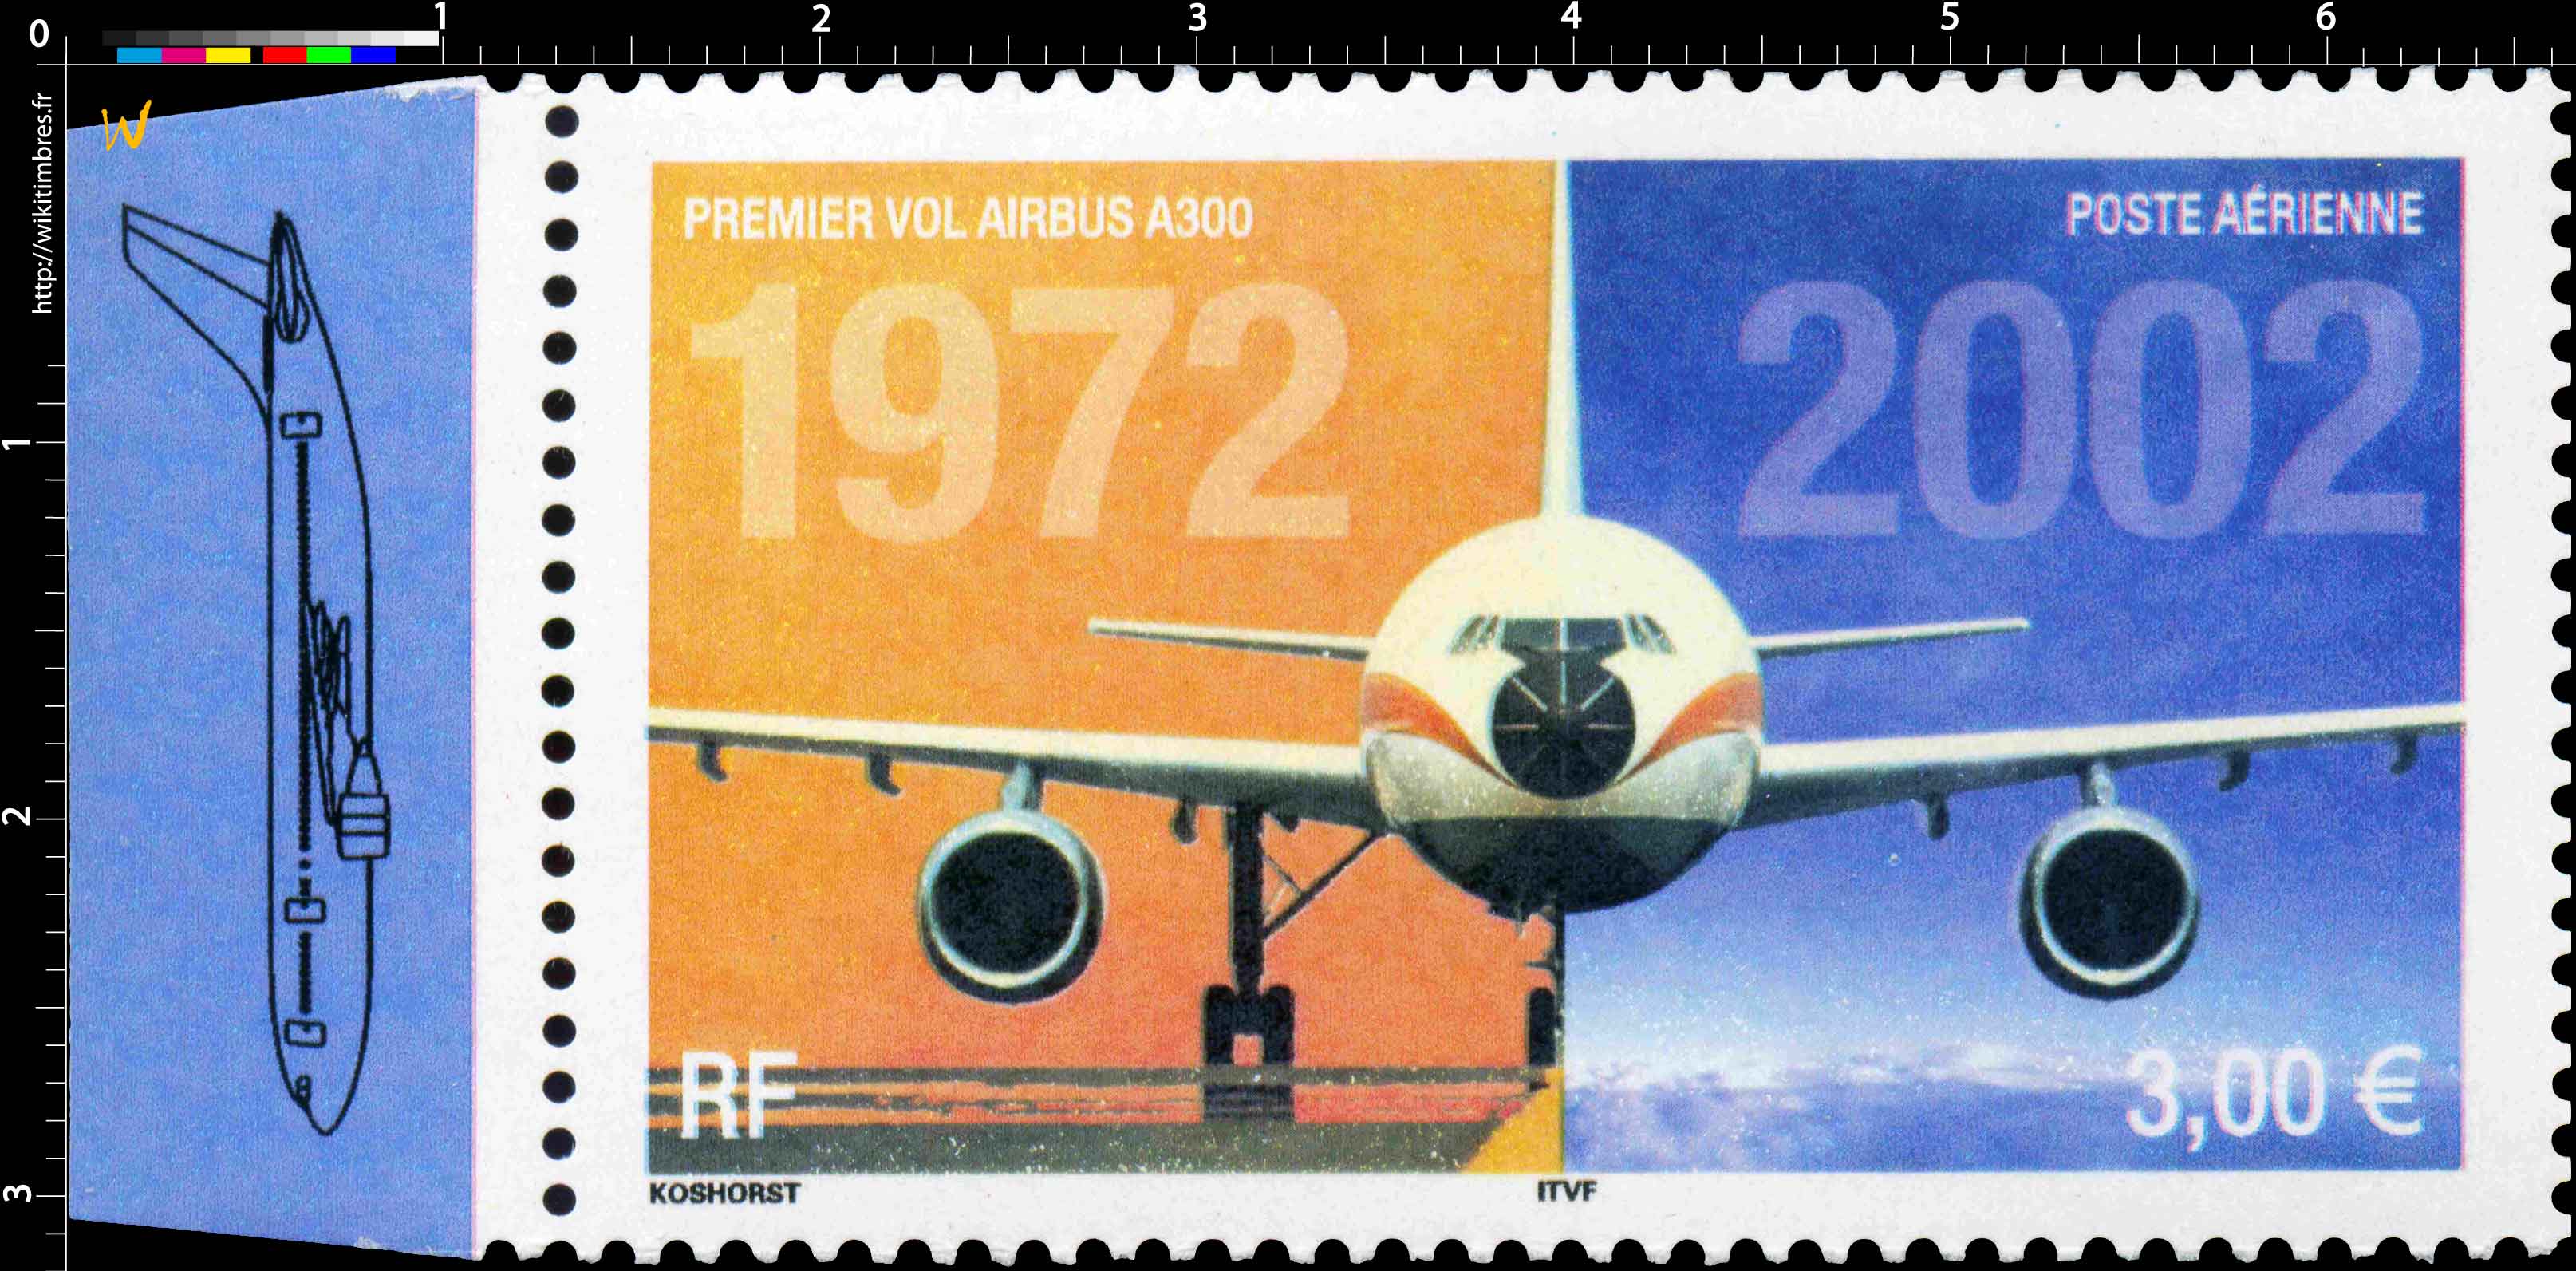 1972-2002 PREMIER VOL DE L'AIRBUS A300